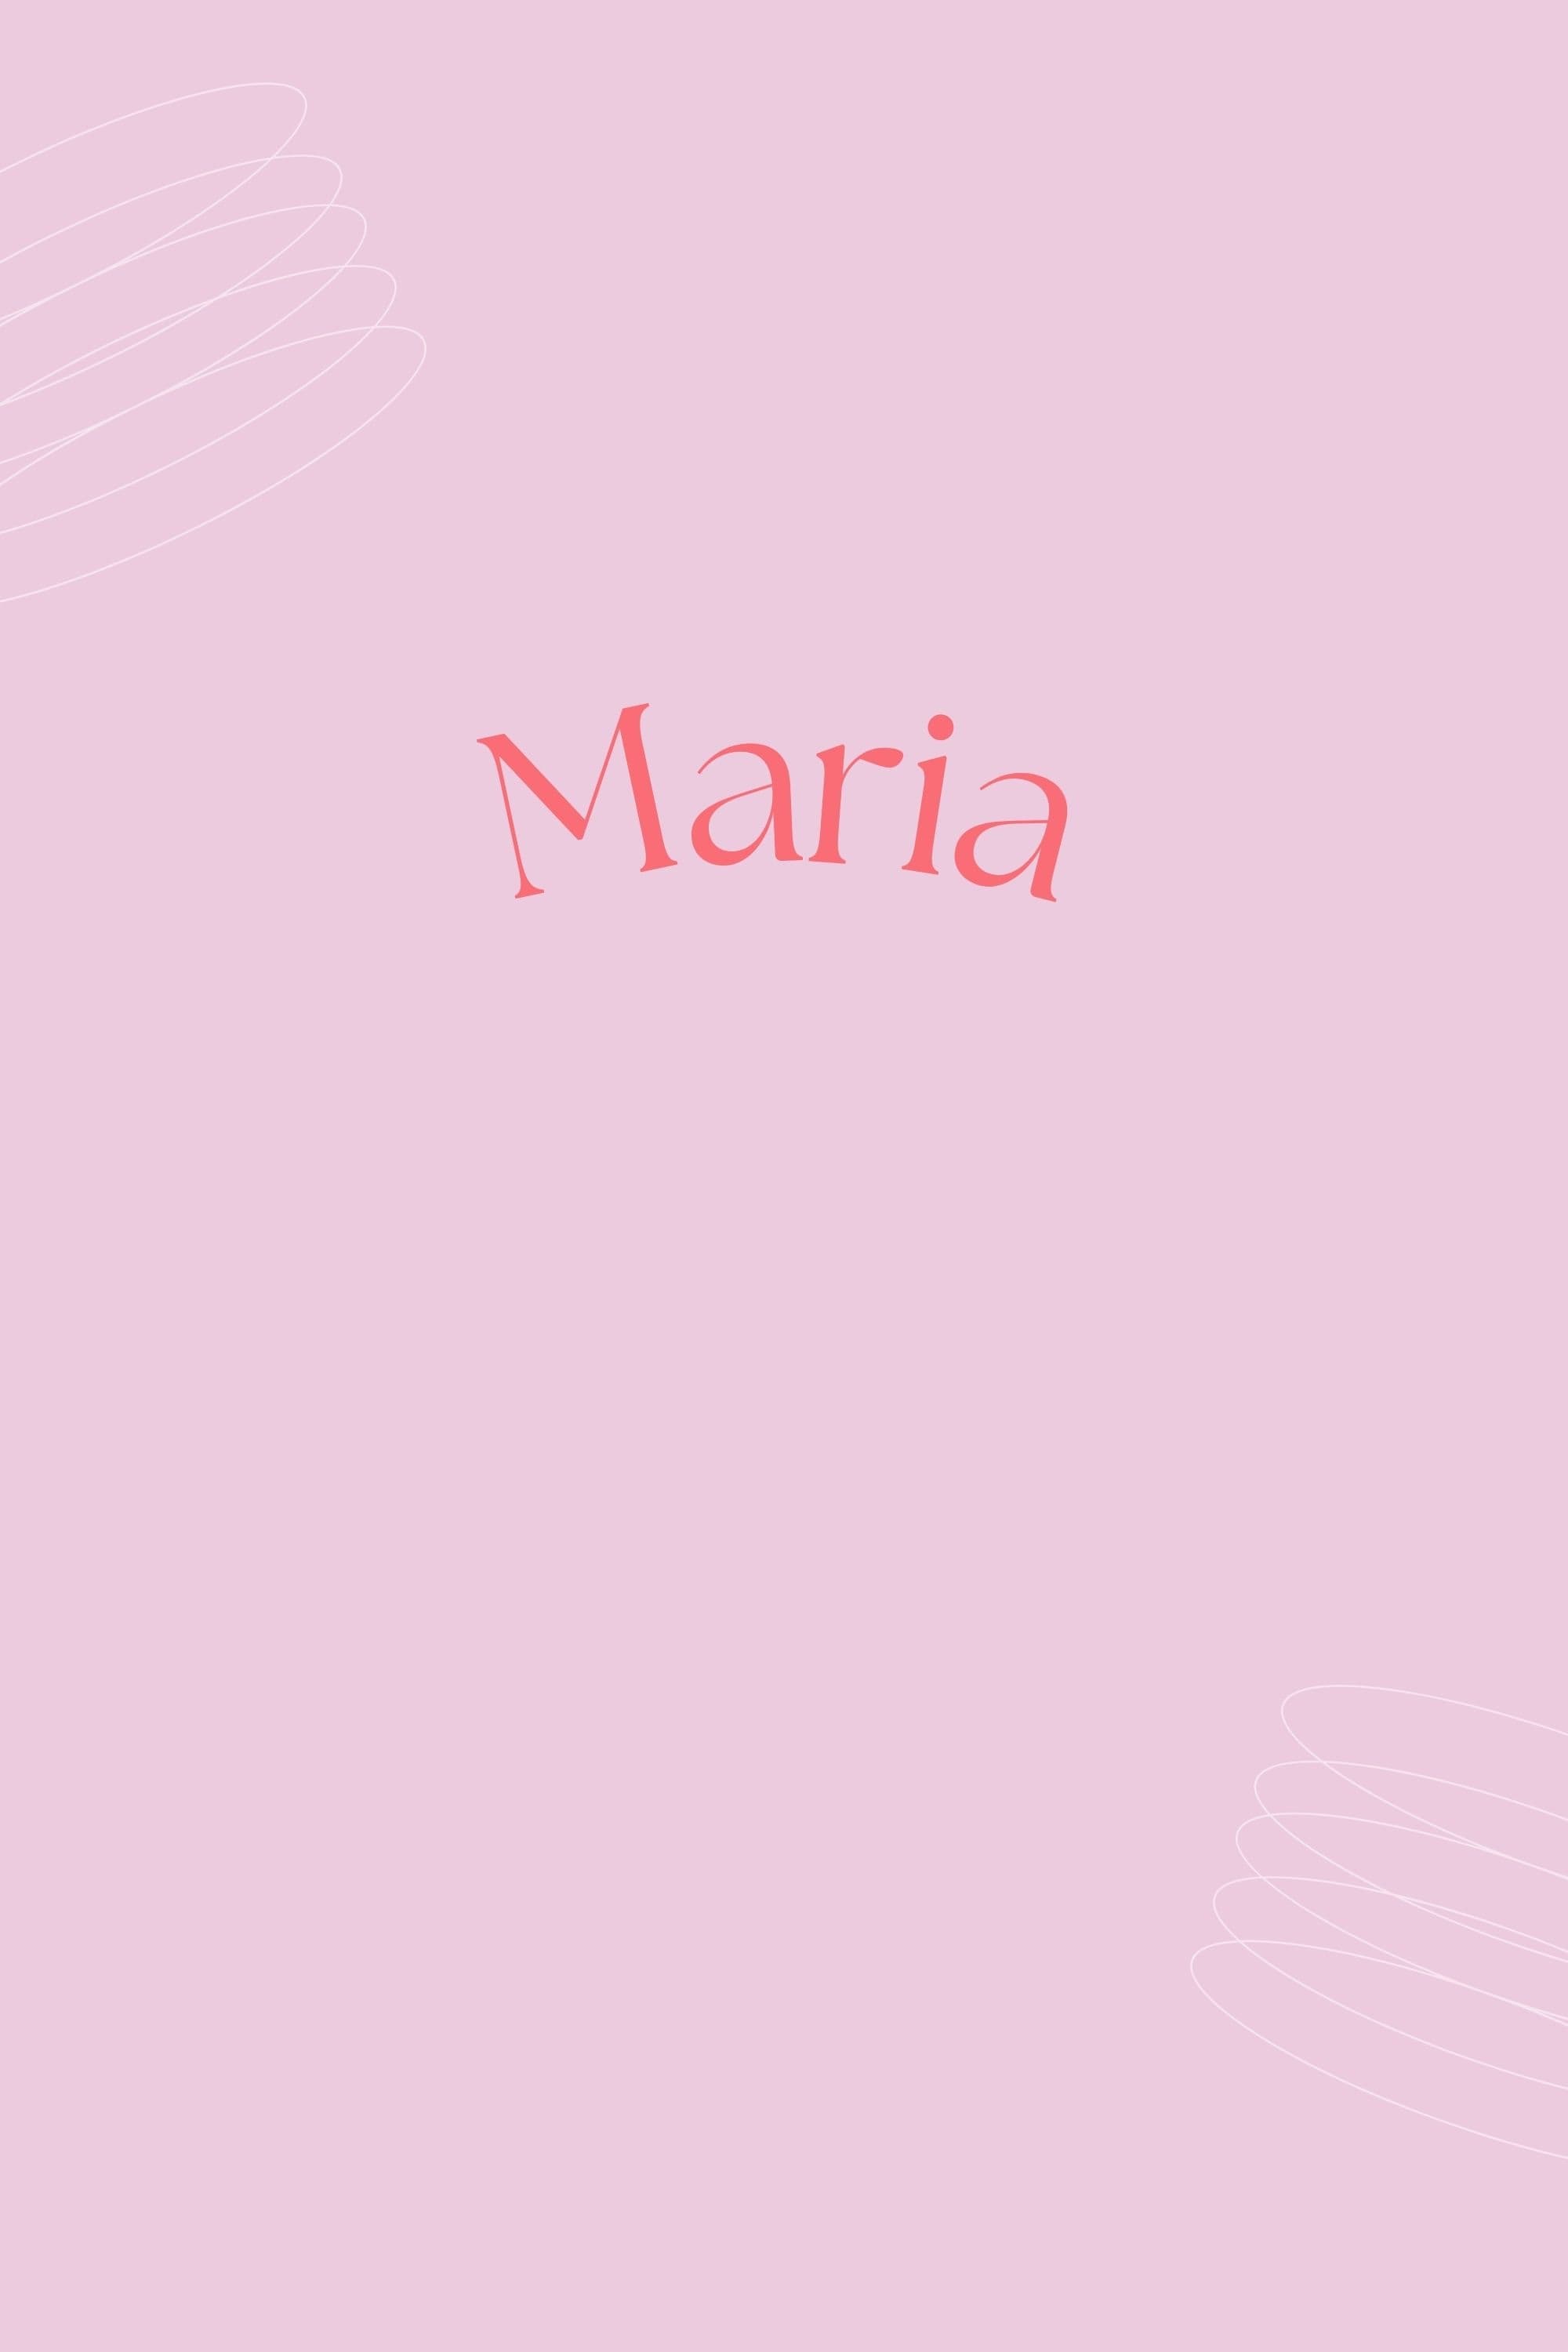 Maria film